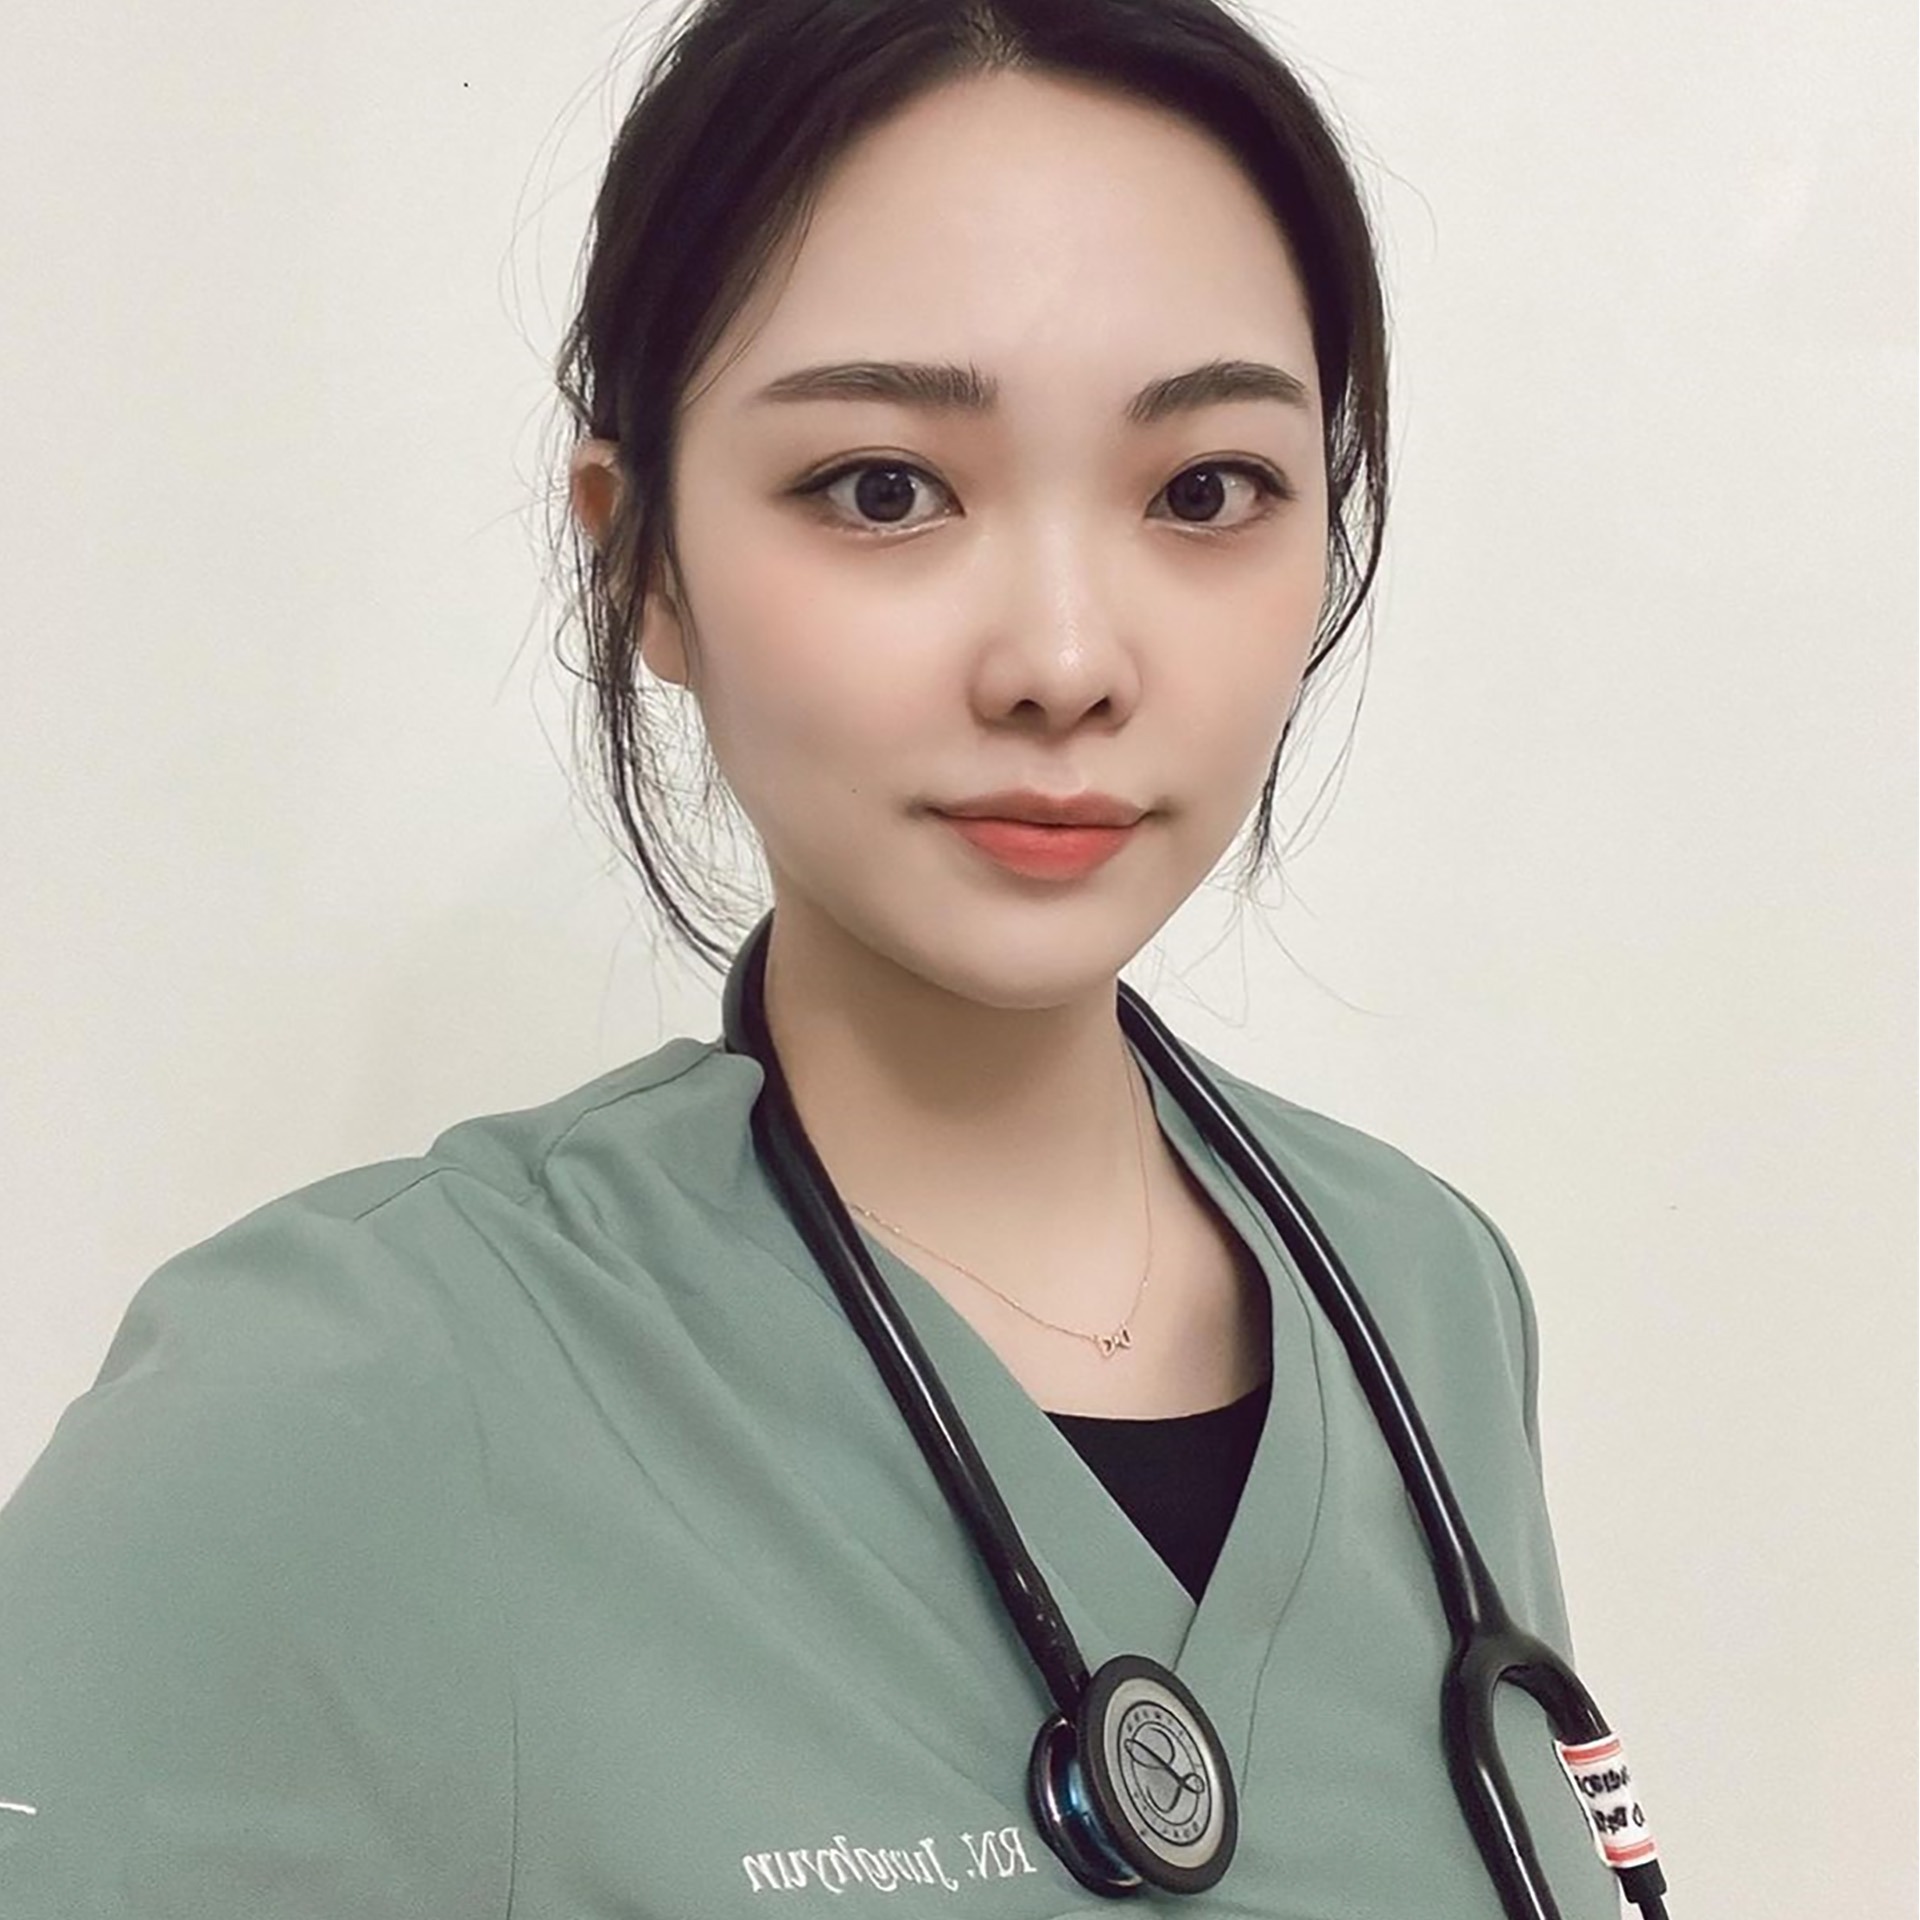 Dr. Lee Jung-hyun